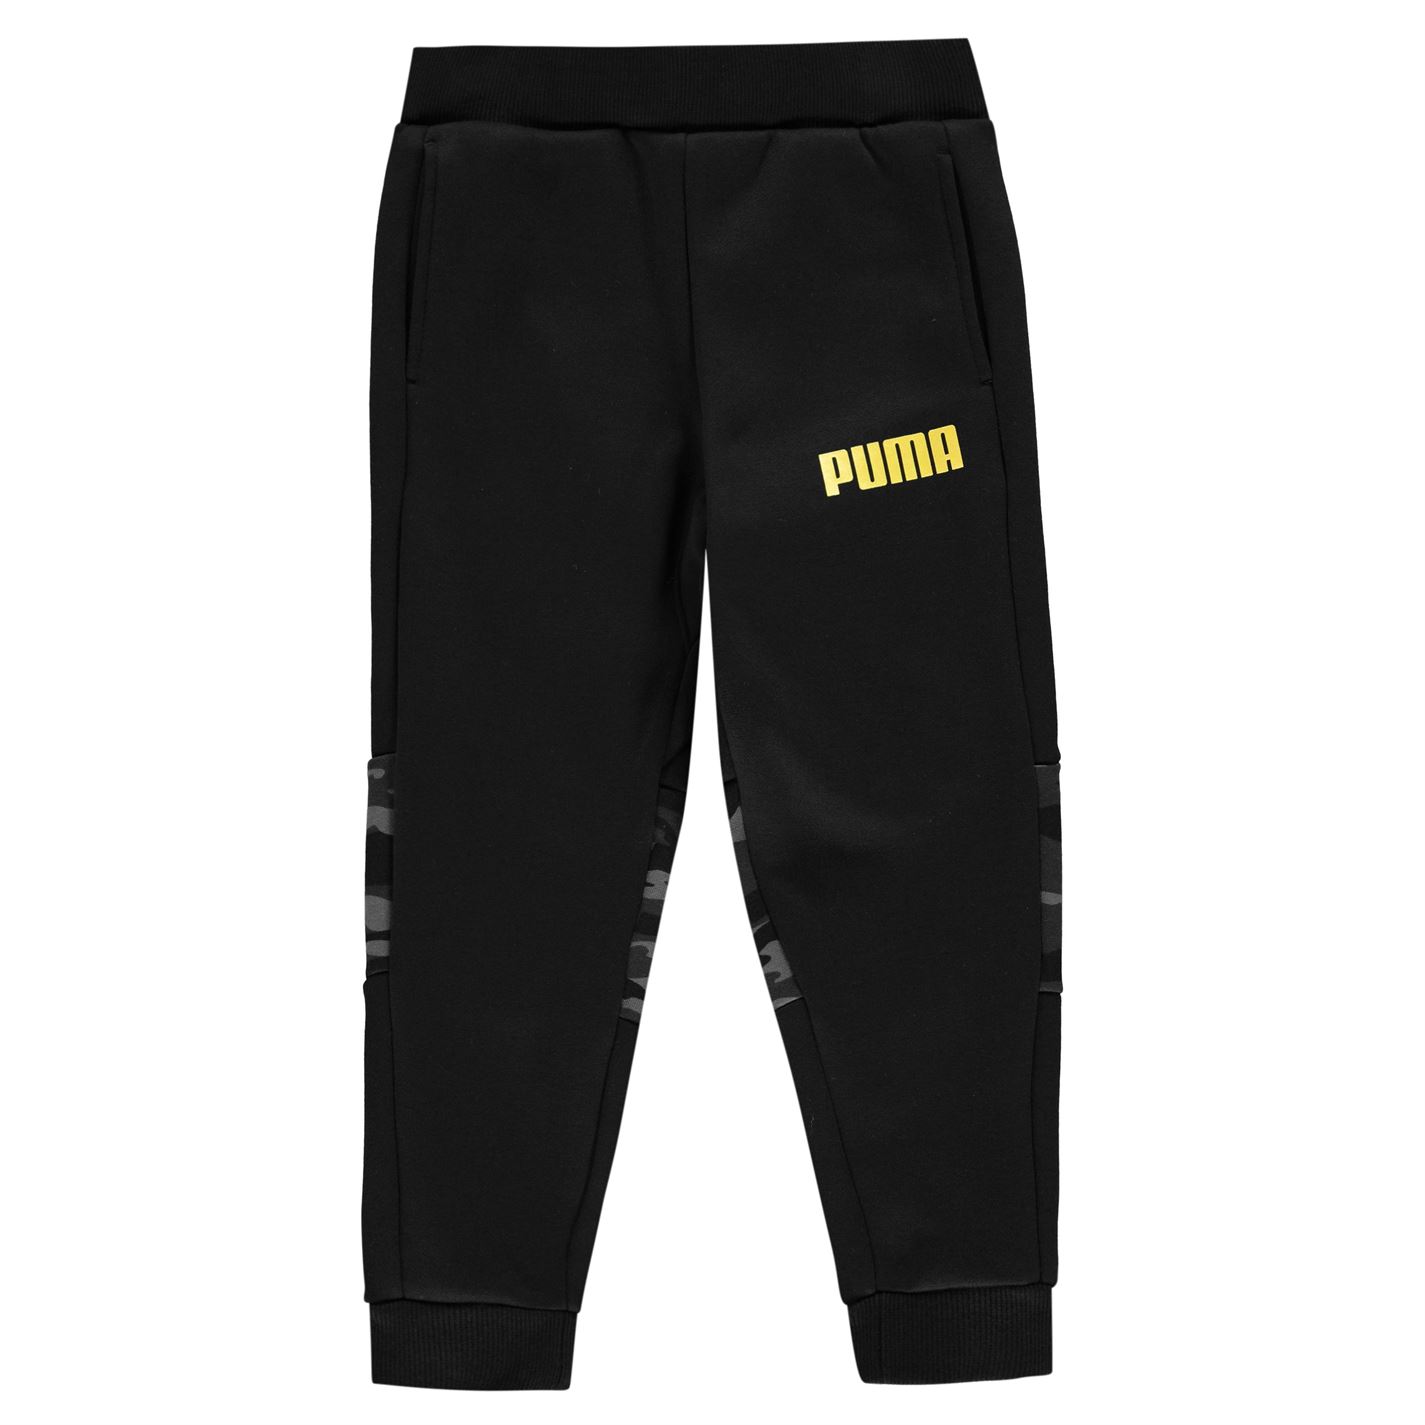 Pantaloni caldurosi Puma Camo pentru copii negru auriu